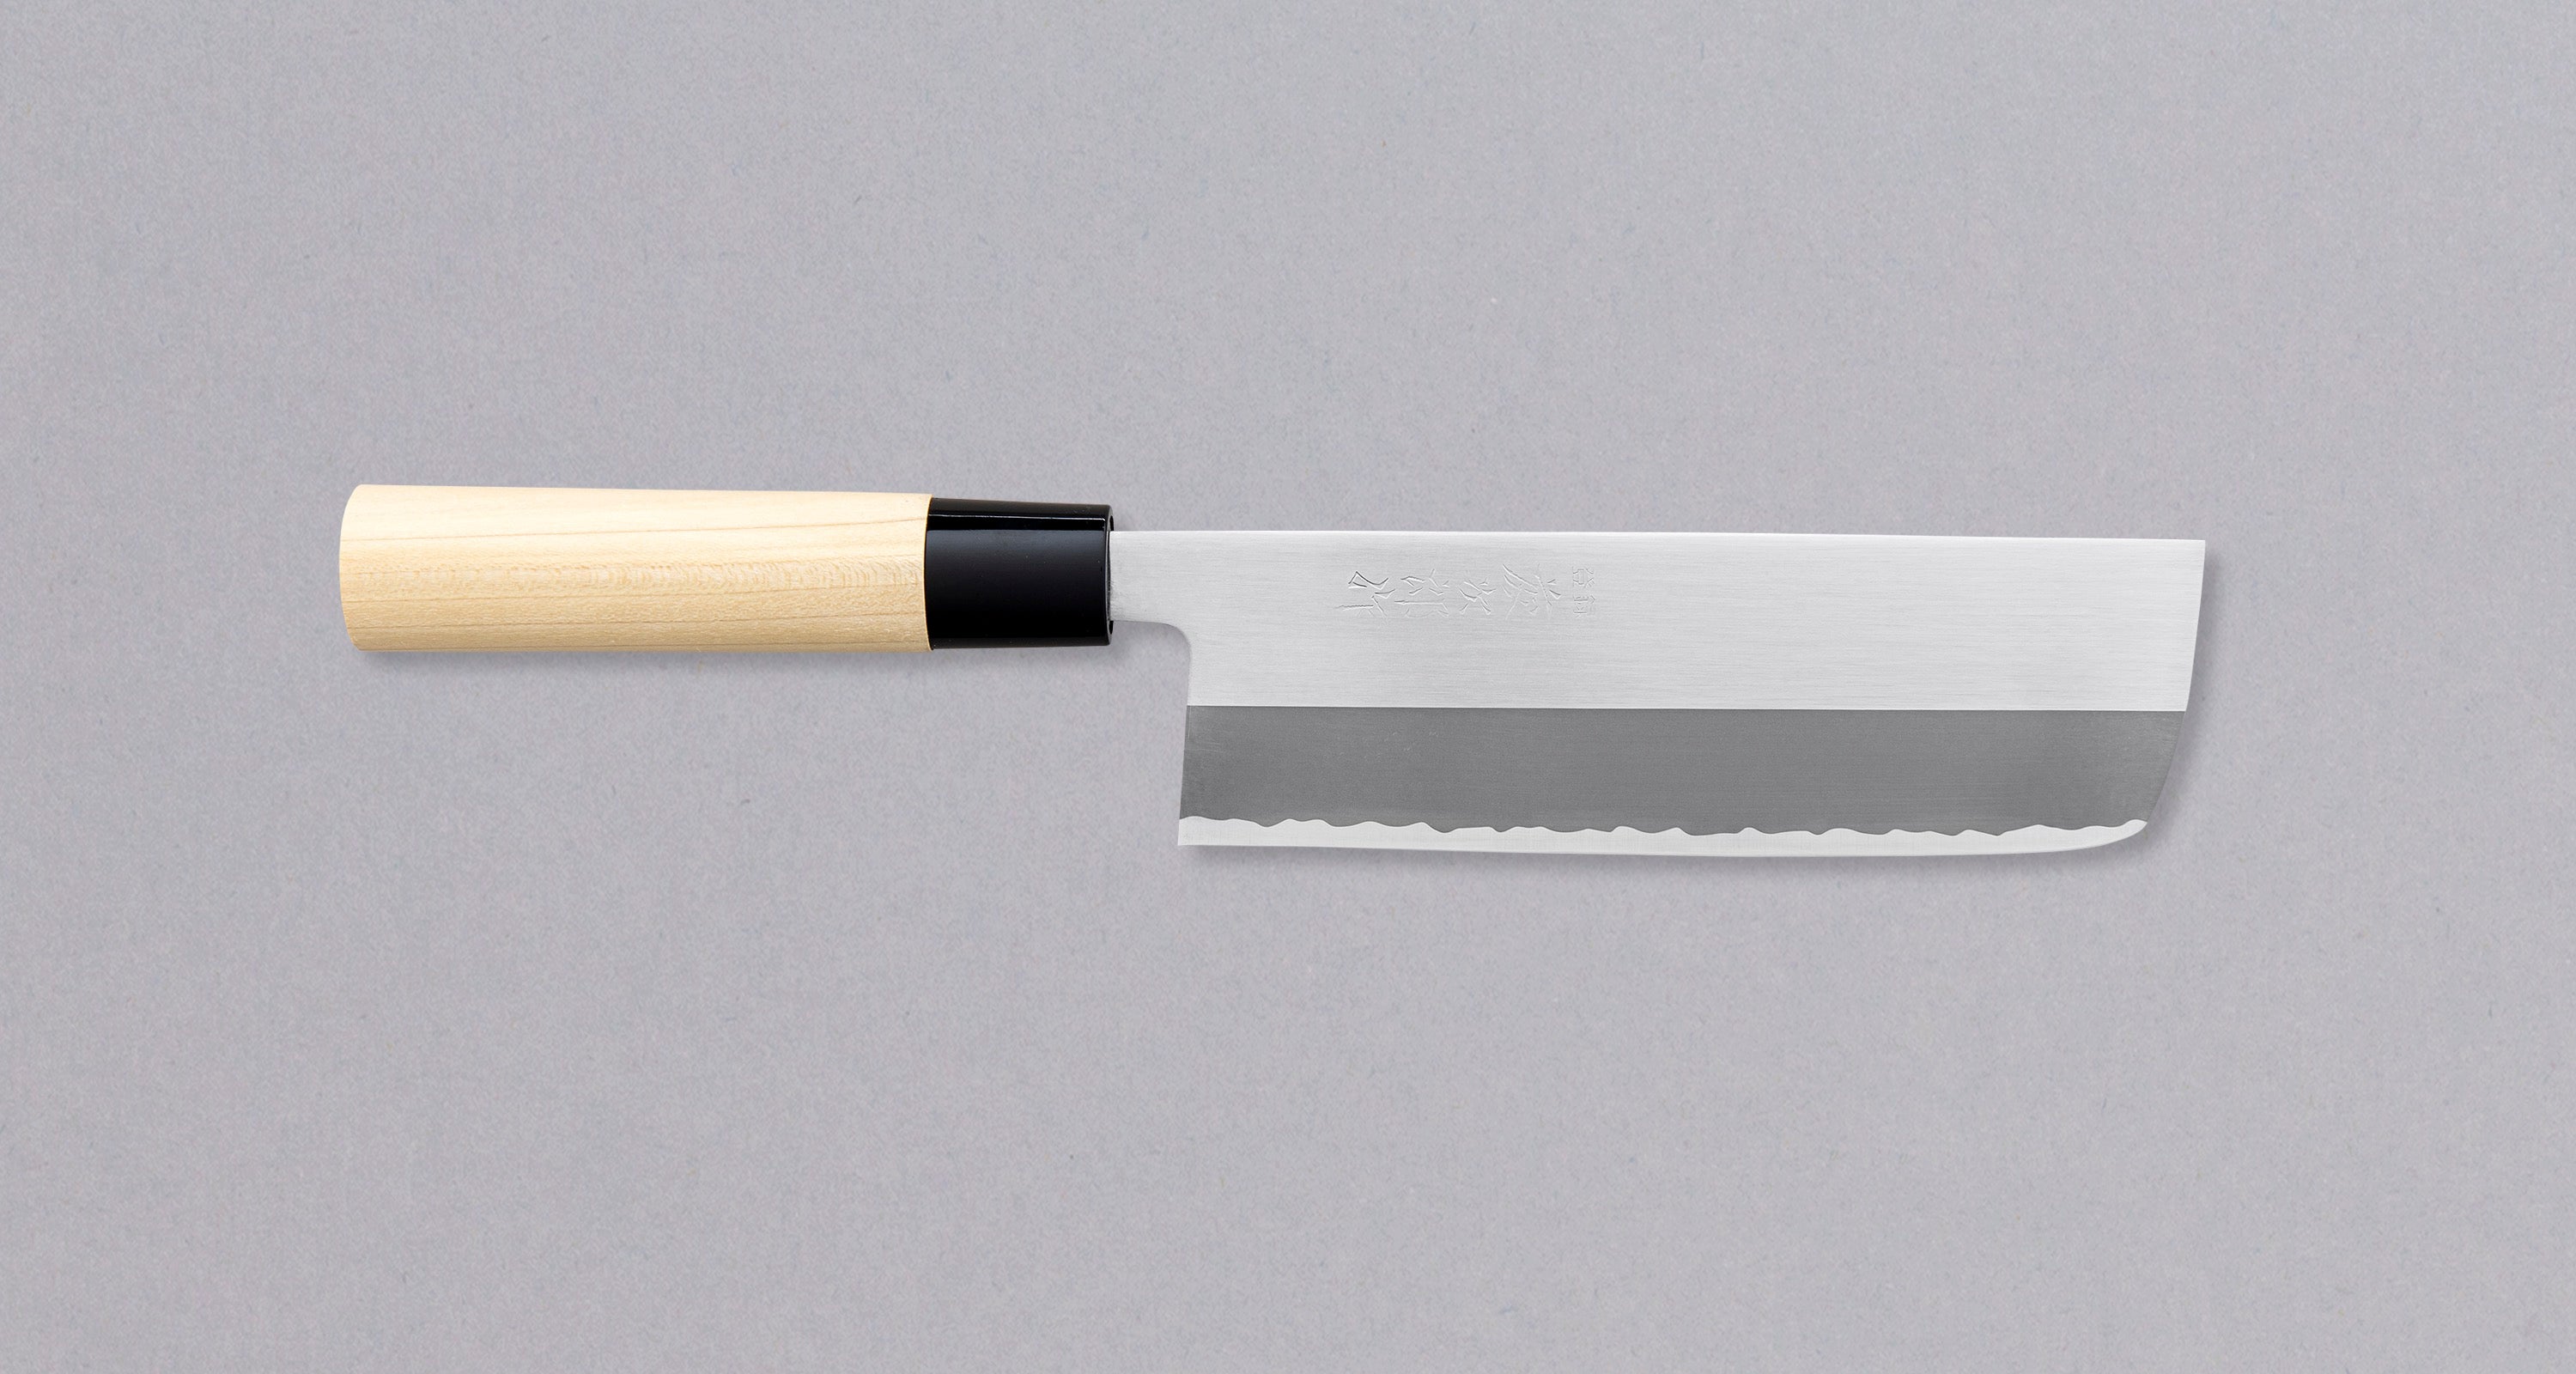 Vegetable knife